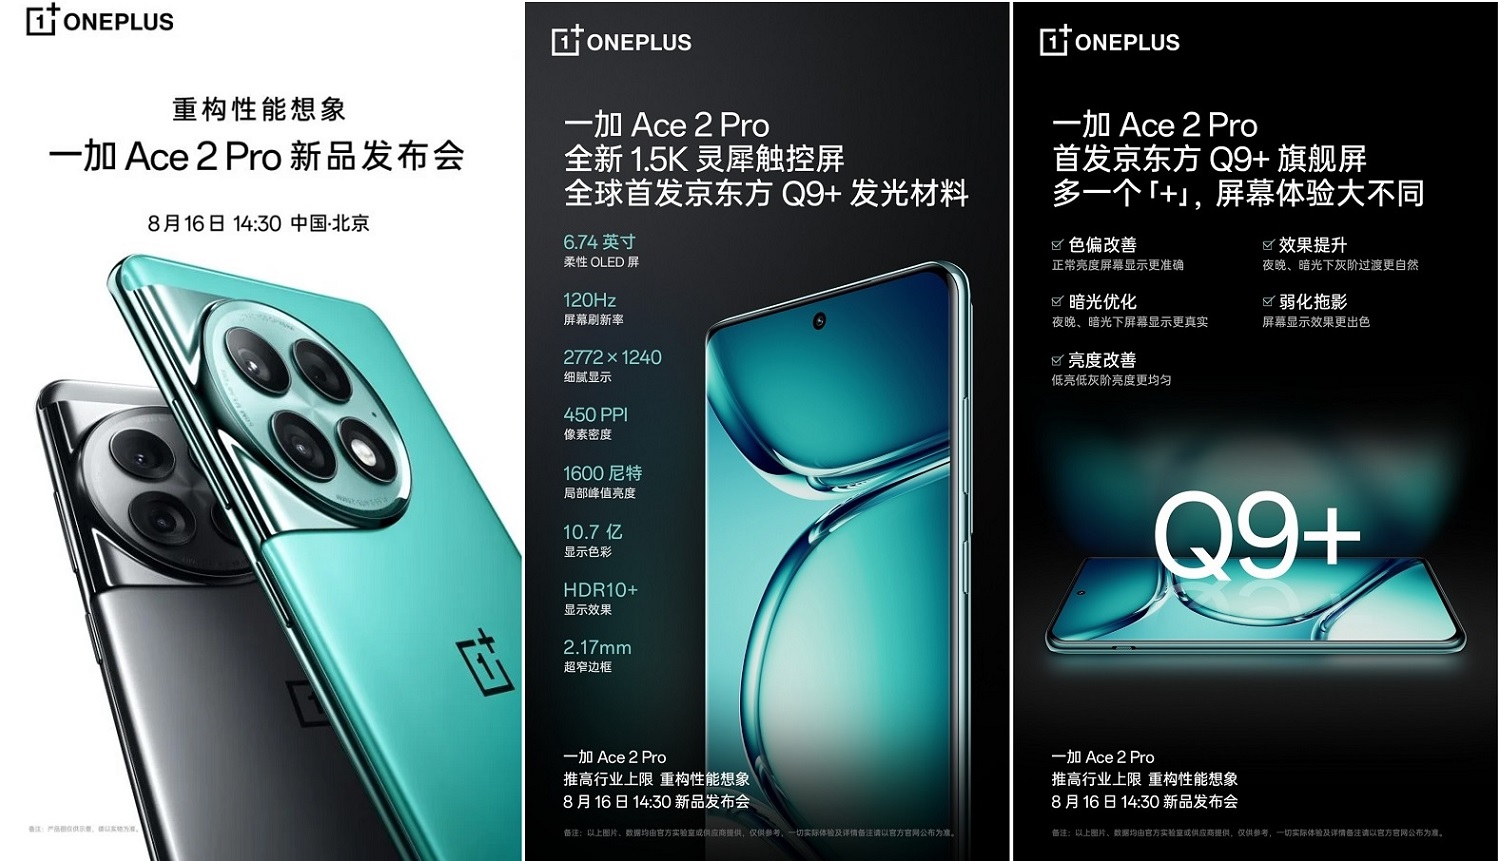 OnePlus-Ace-2-Pro.jpg